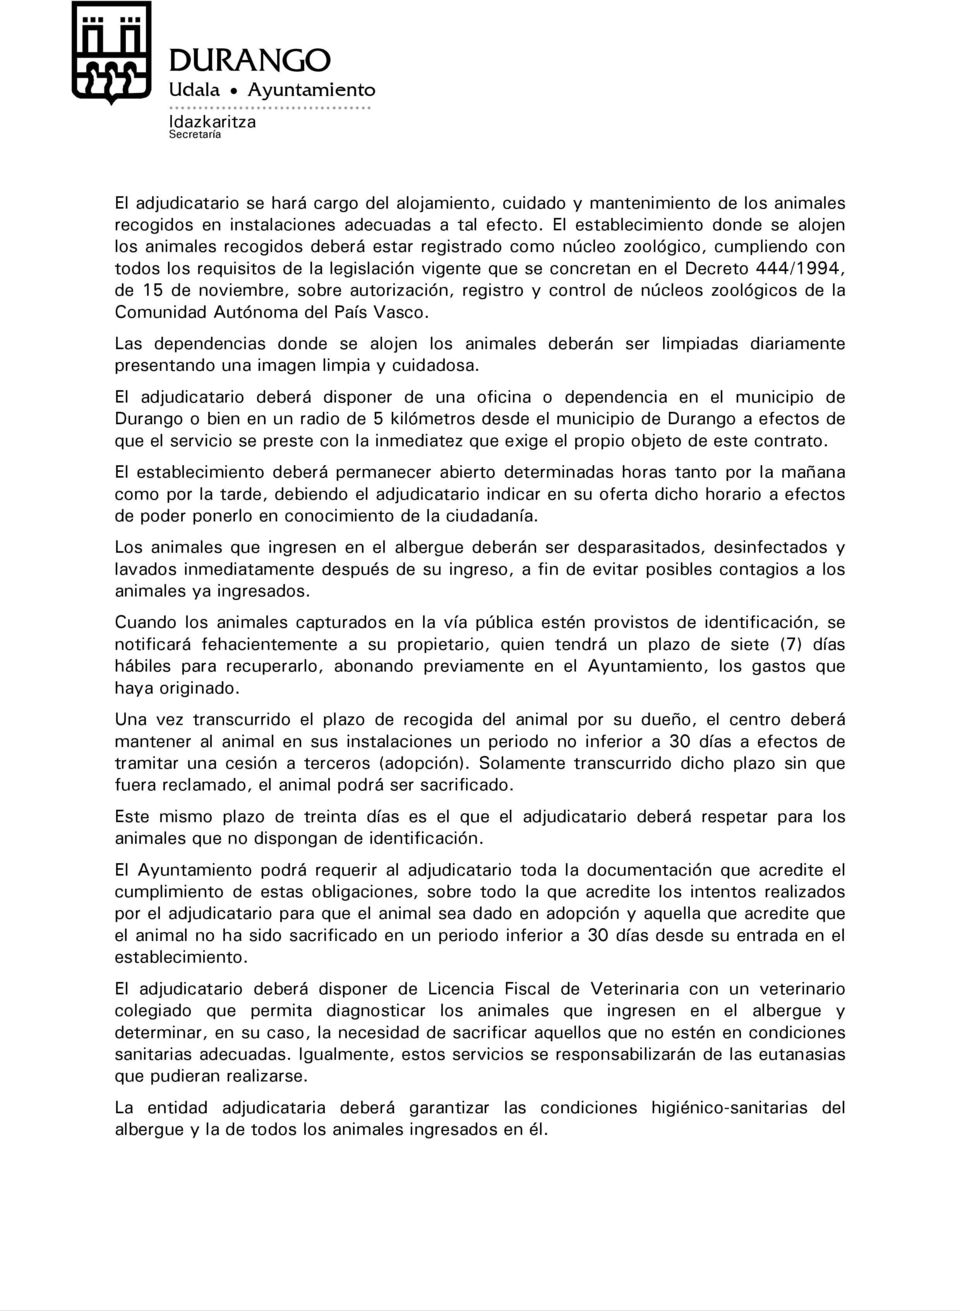 444/1994, de 15 de noviembre, sobre autorización, registro y control de núcleos zoológicos de la Comunidad Autónoma del País Vasco.